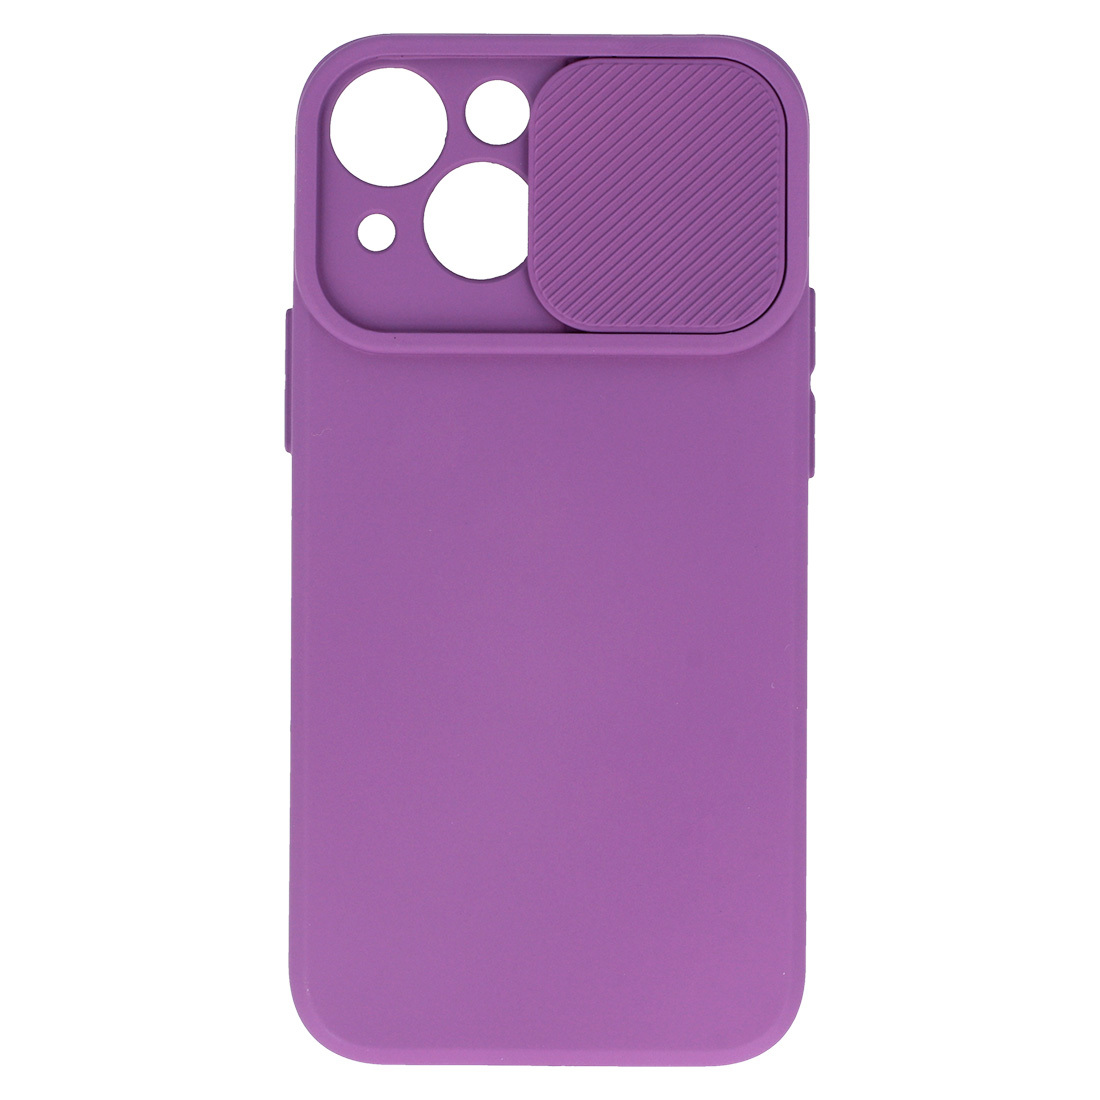 Pokrowiec etui z elastycznego TPU Camshield Soft Case fioletowe APPLE iPhone 11 Pro Max / 4